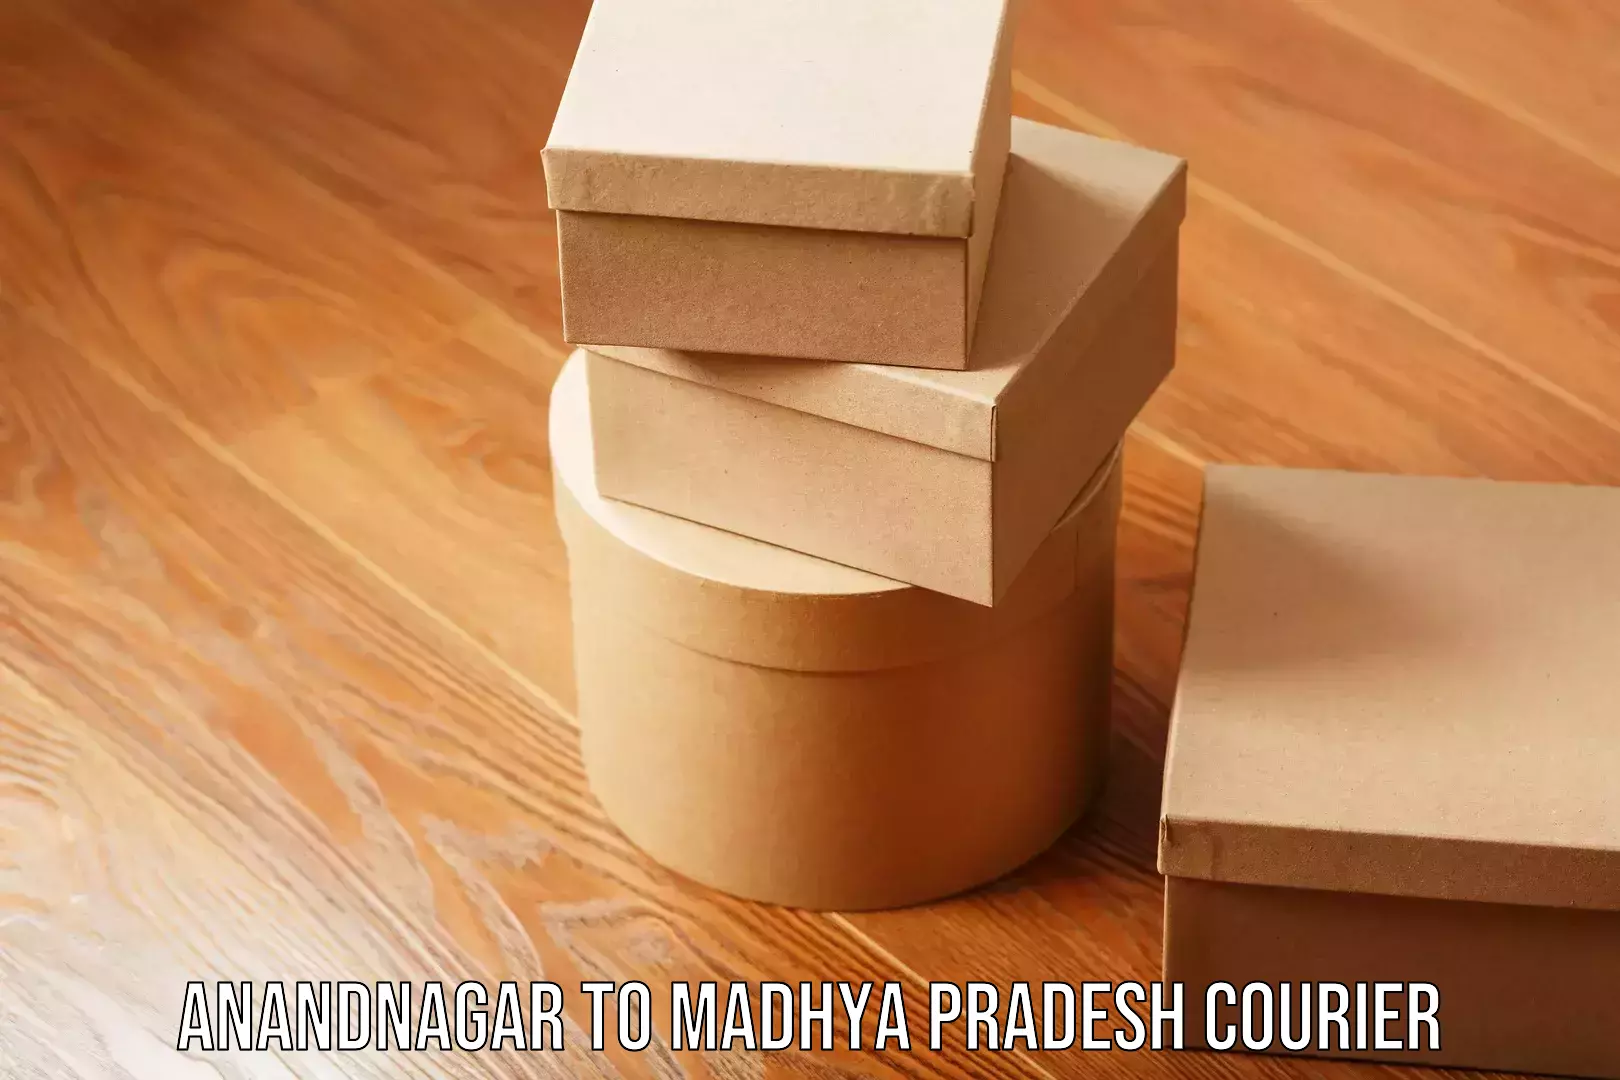 High-capacity shipping options Anandnagar to Madhya Pradesh